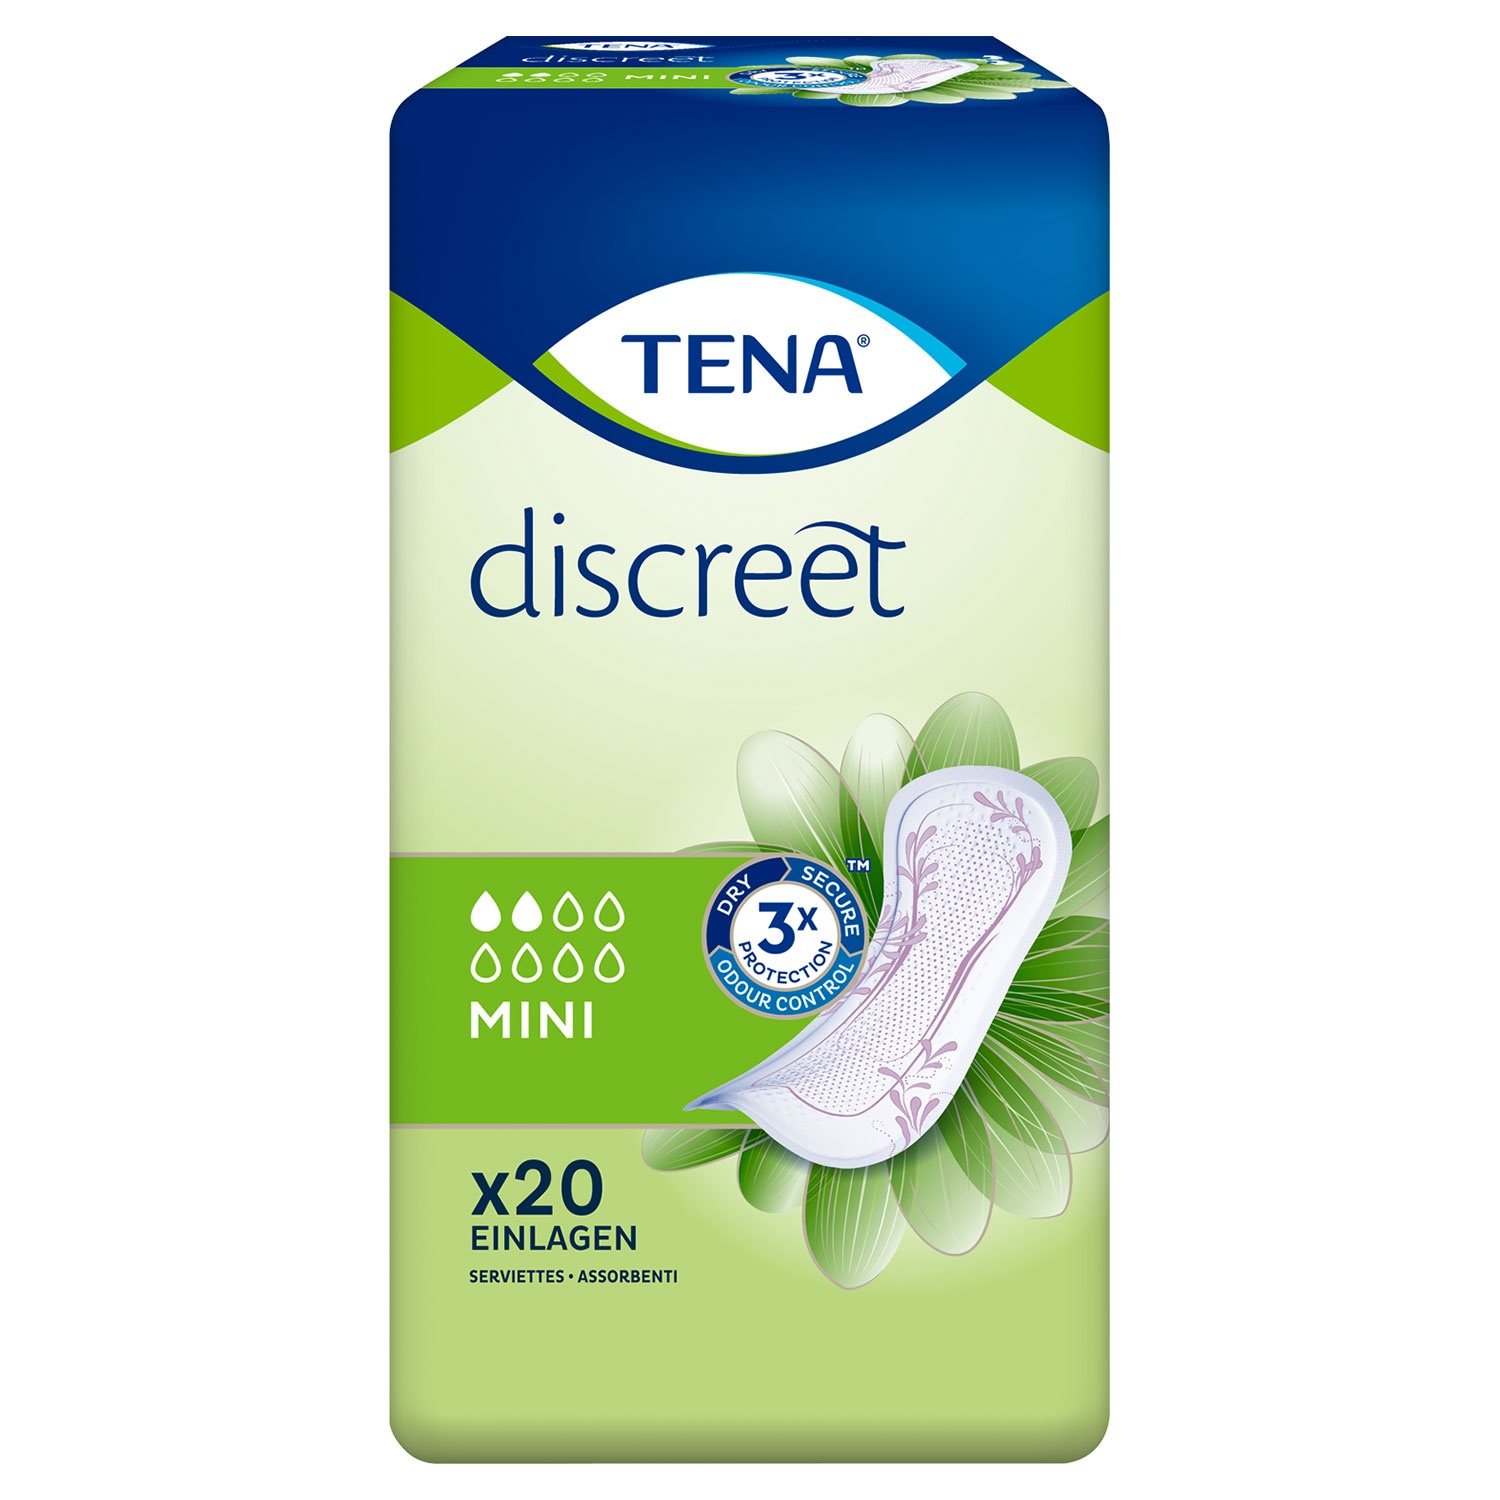 TENA Einlagen-Discreet